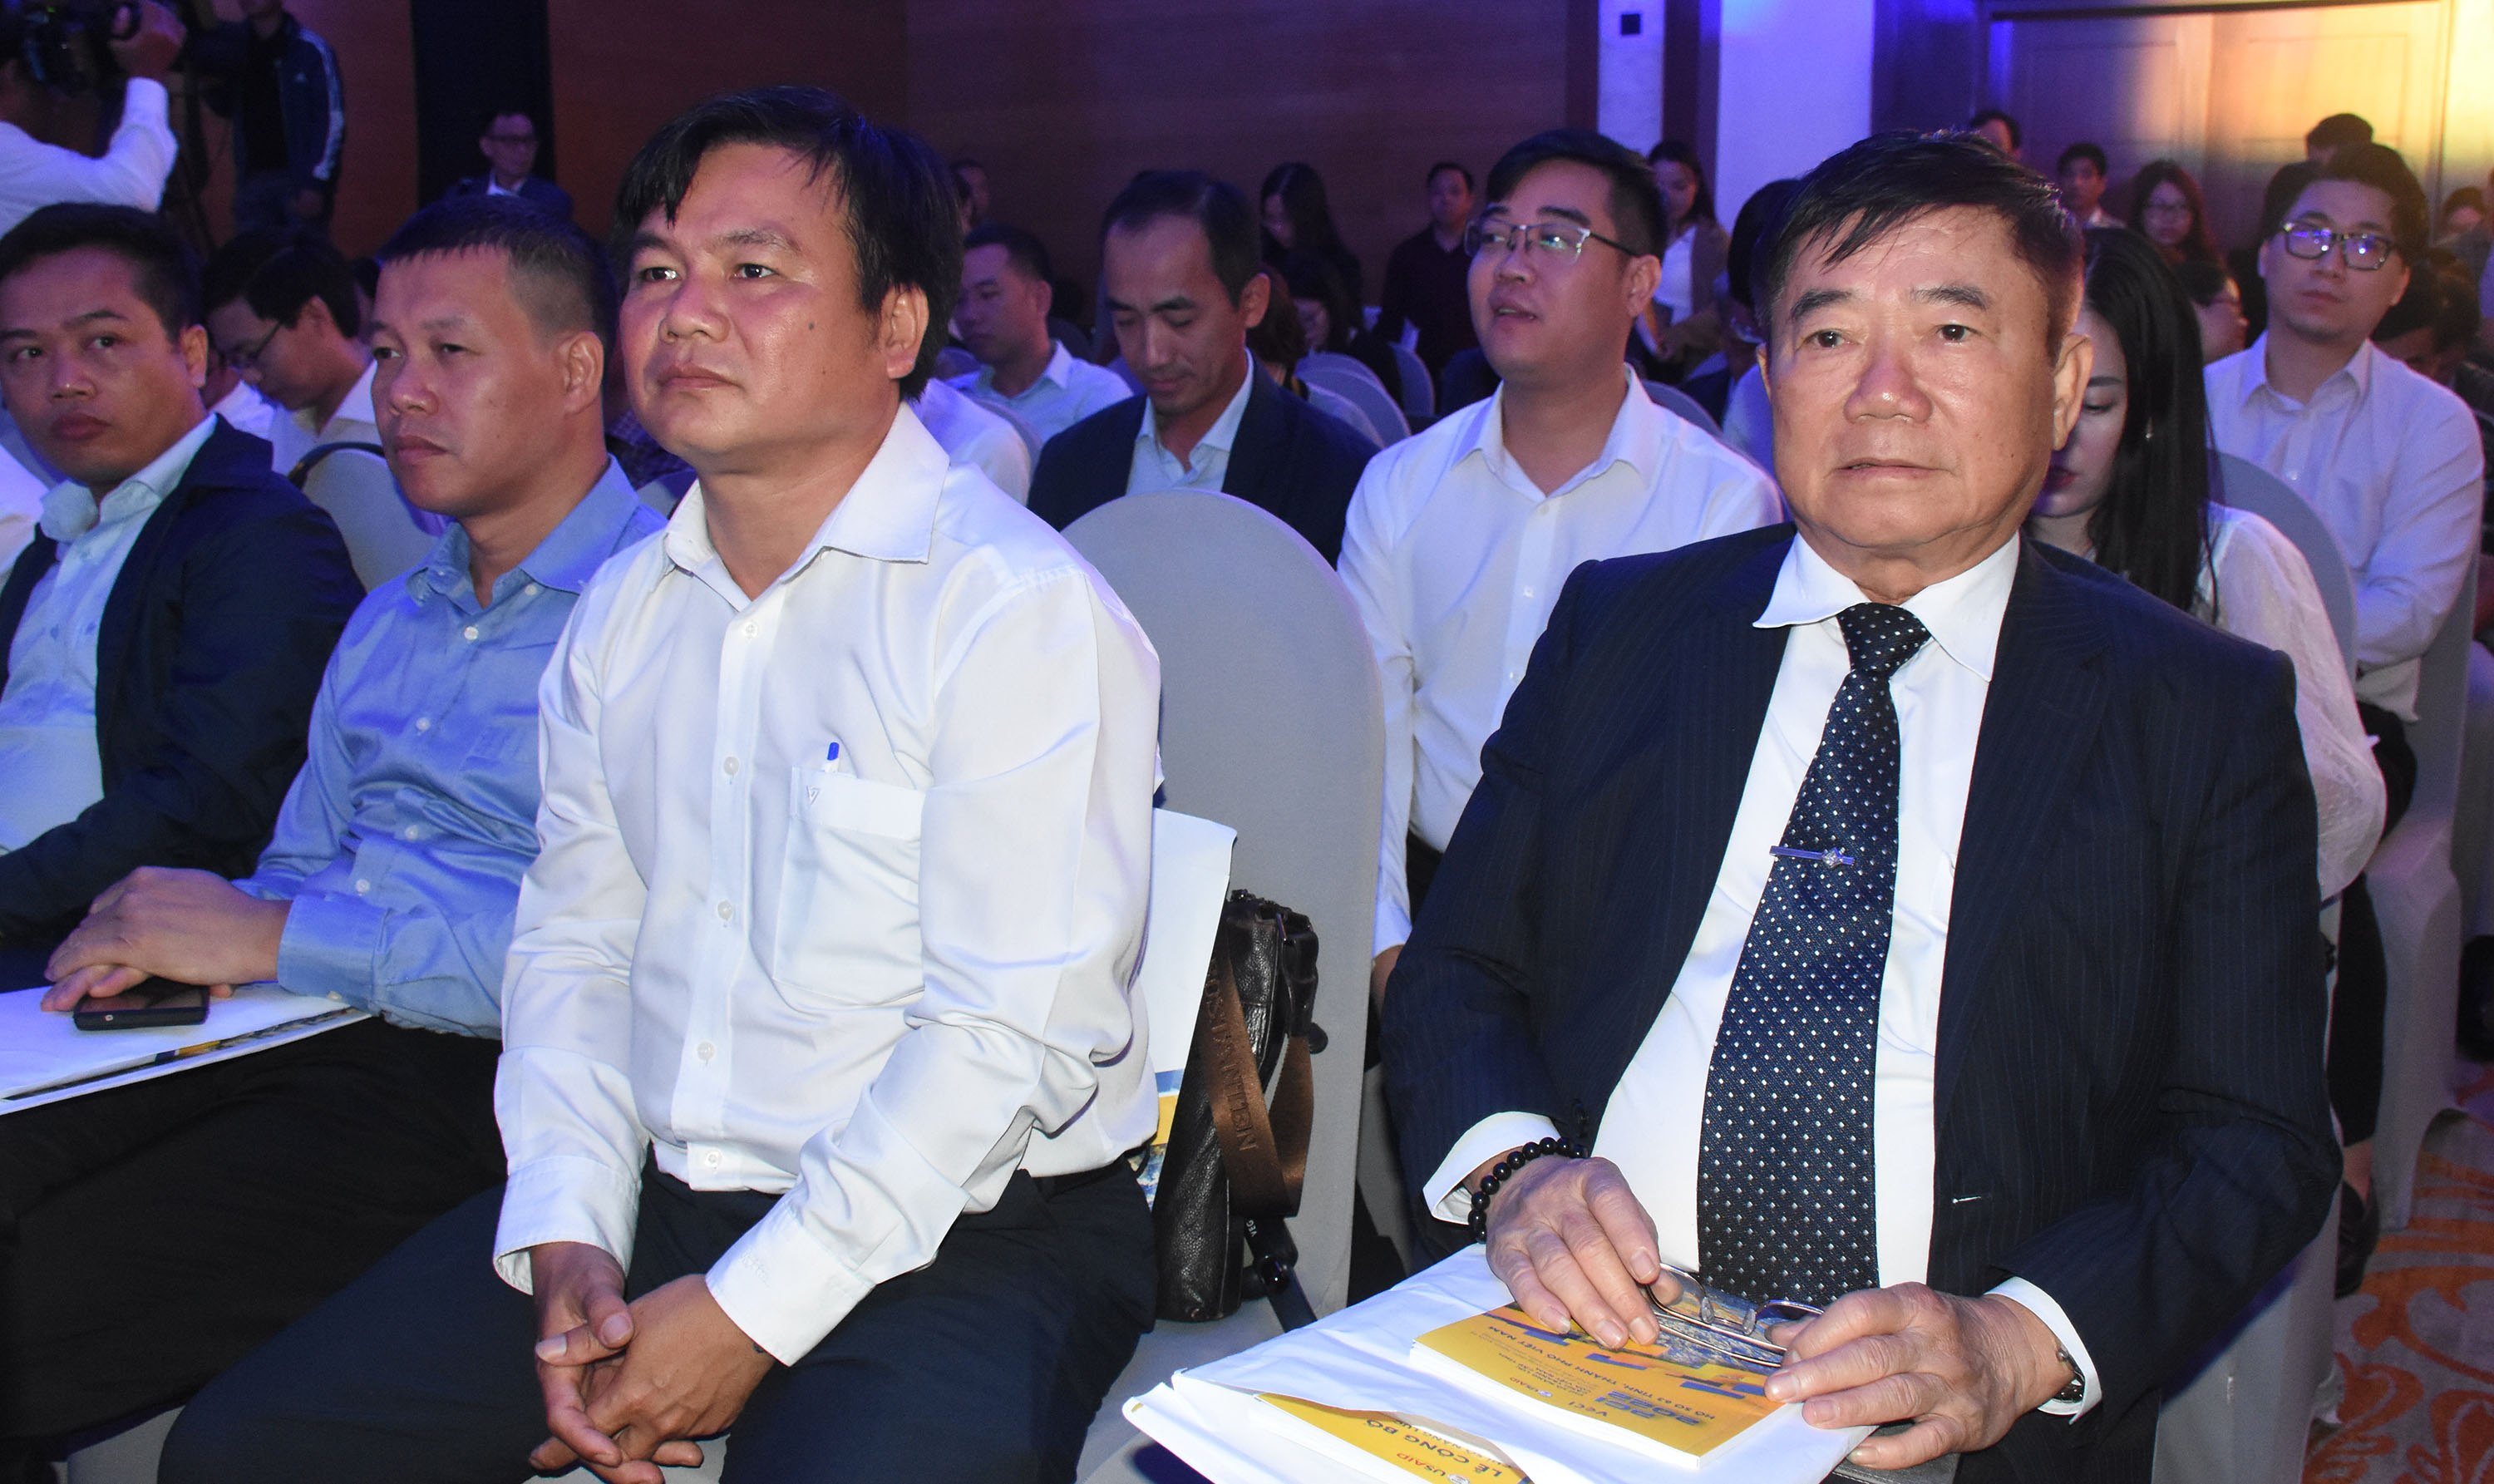 Ông Đoàn Hữu Thuận, Chủ tịch Hội Xây dựng tỉnh, Chủ tịch HĐQT Công ty CP Phát triển nhà tỉnh Bà Rịa - Vũng Tàu cũng tham dự lễ công bố